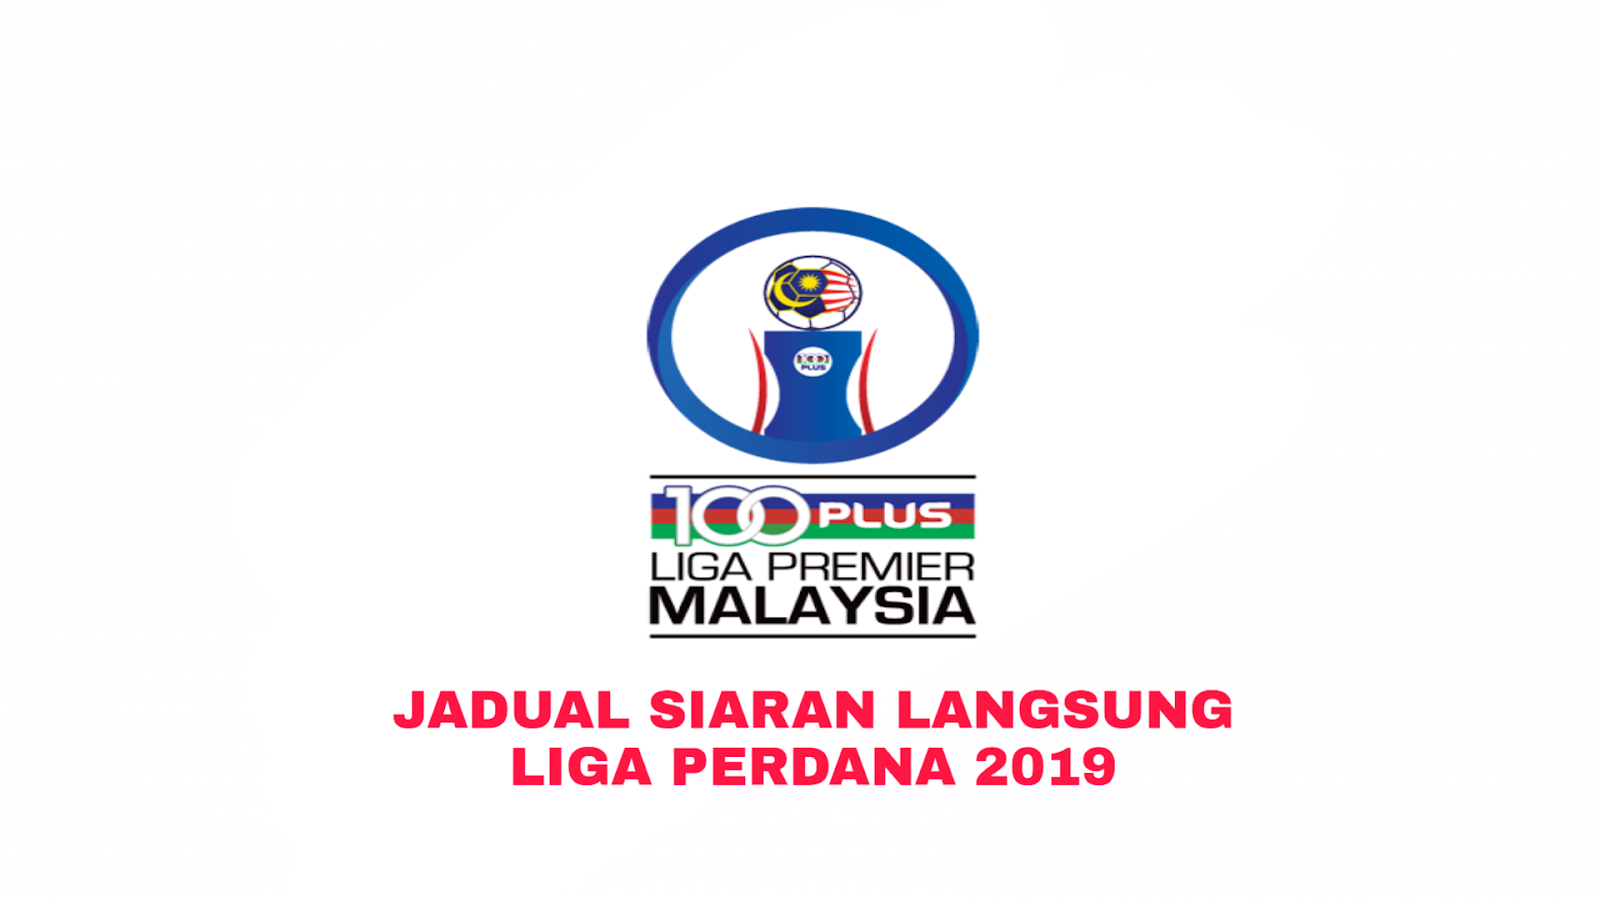 Jadual Siaran Langsung Liga Perdana Malaysia 2019 - MY 